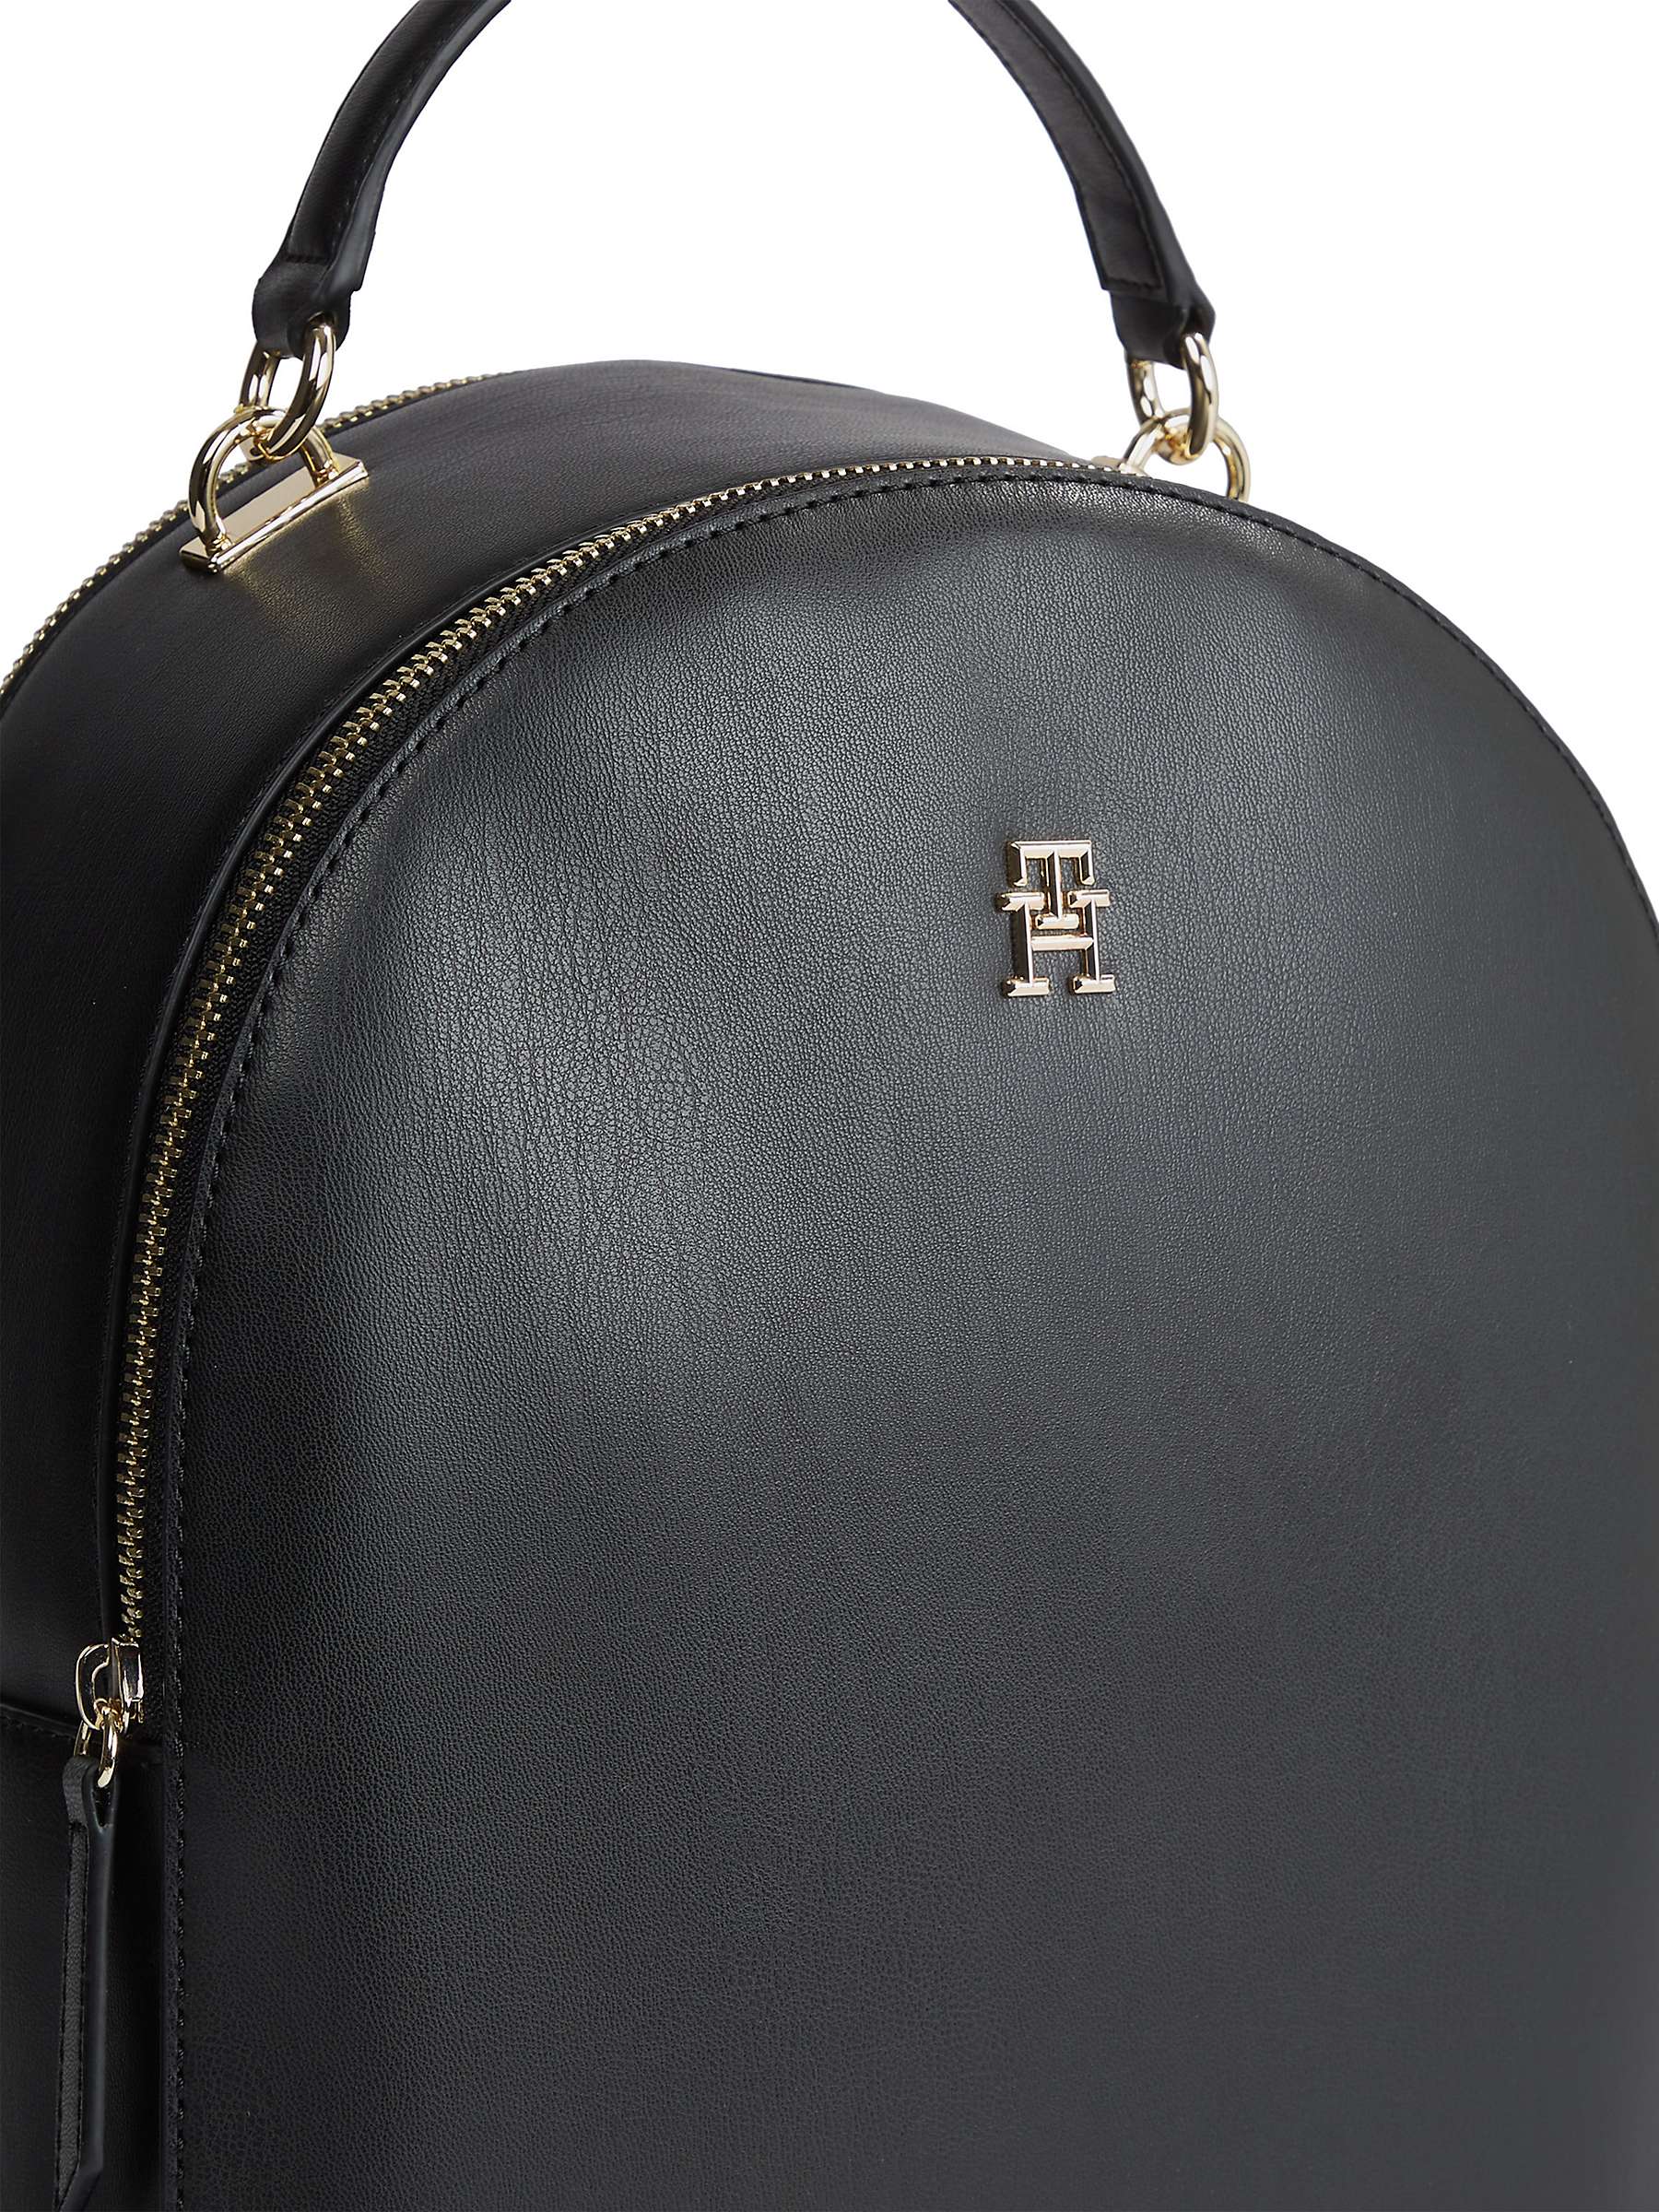 Buy Tommy Hilfiger Refined Backpack, Black Online at johnlewis.com